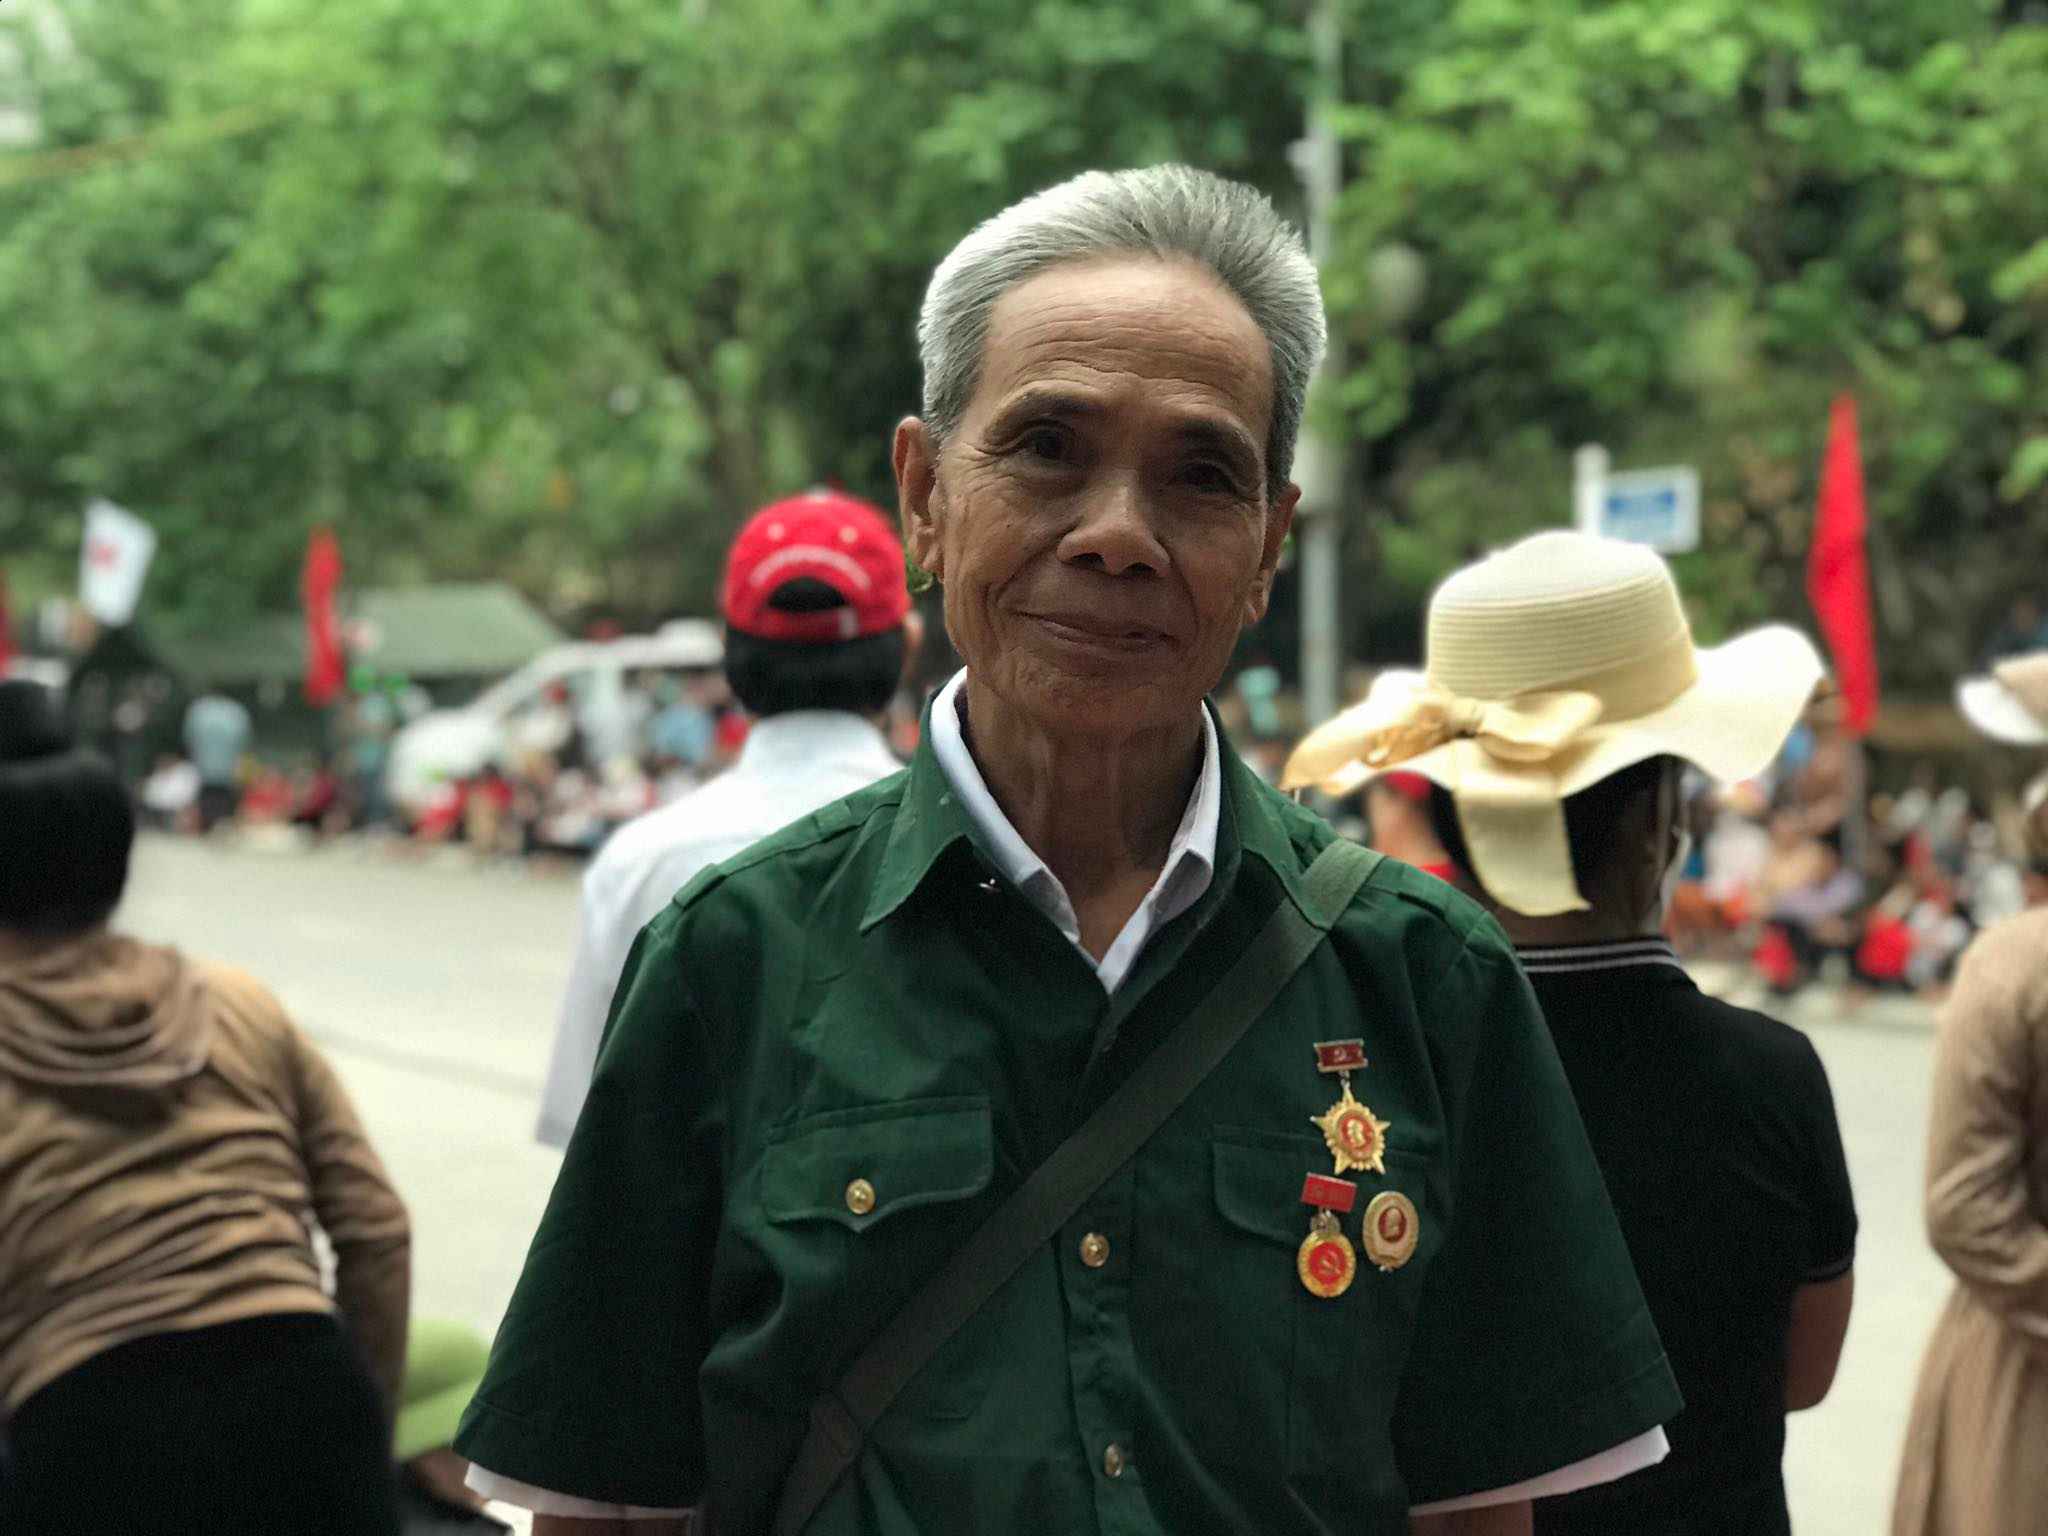 Ông Hà Văn Thành (84 tuổi, Vân Hồ, Sơn La) bày tỏ xúc động trước giờ diễn ra lễ mít tính Kỷ niệm 70 năm Chiến thắng Điện Biên Phủ. Cách đây 70 năm, ông Thành đã tham gia bộ đội, khi 14 tuổi, đóng quân tại Điện Biên Phủ, gánh gạo cho quân đội tại chiến trường.